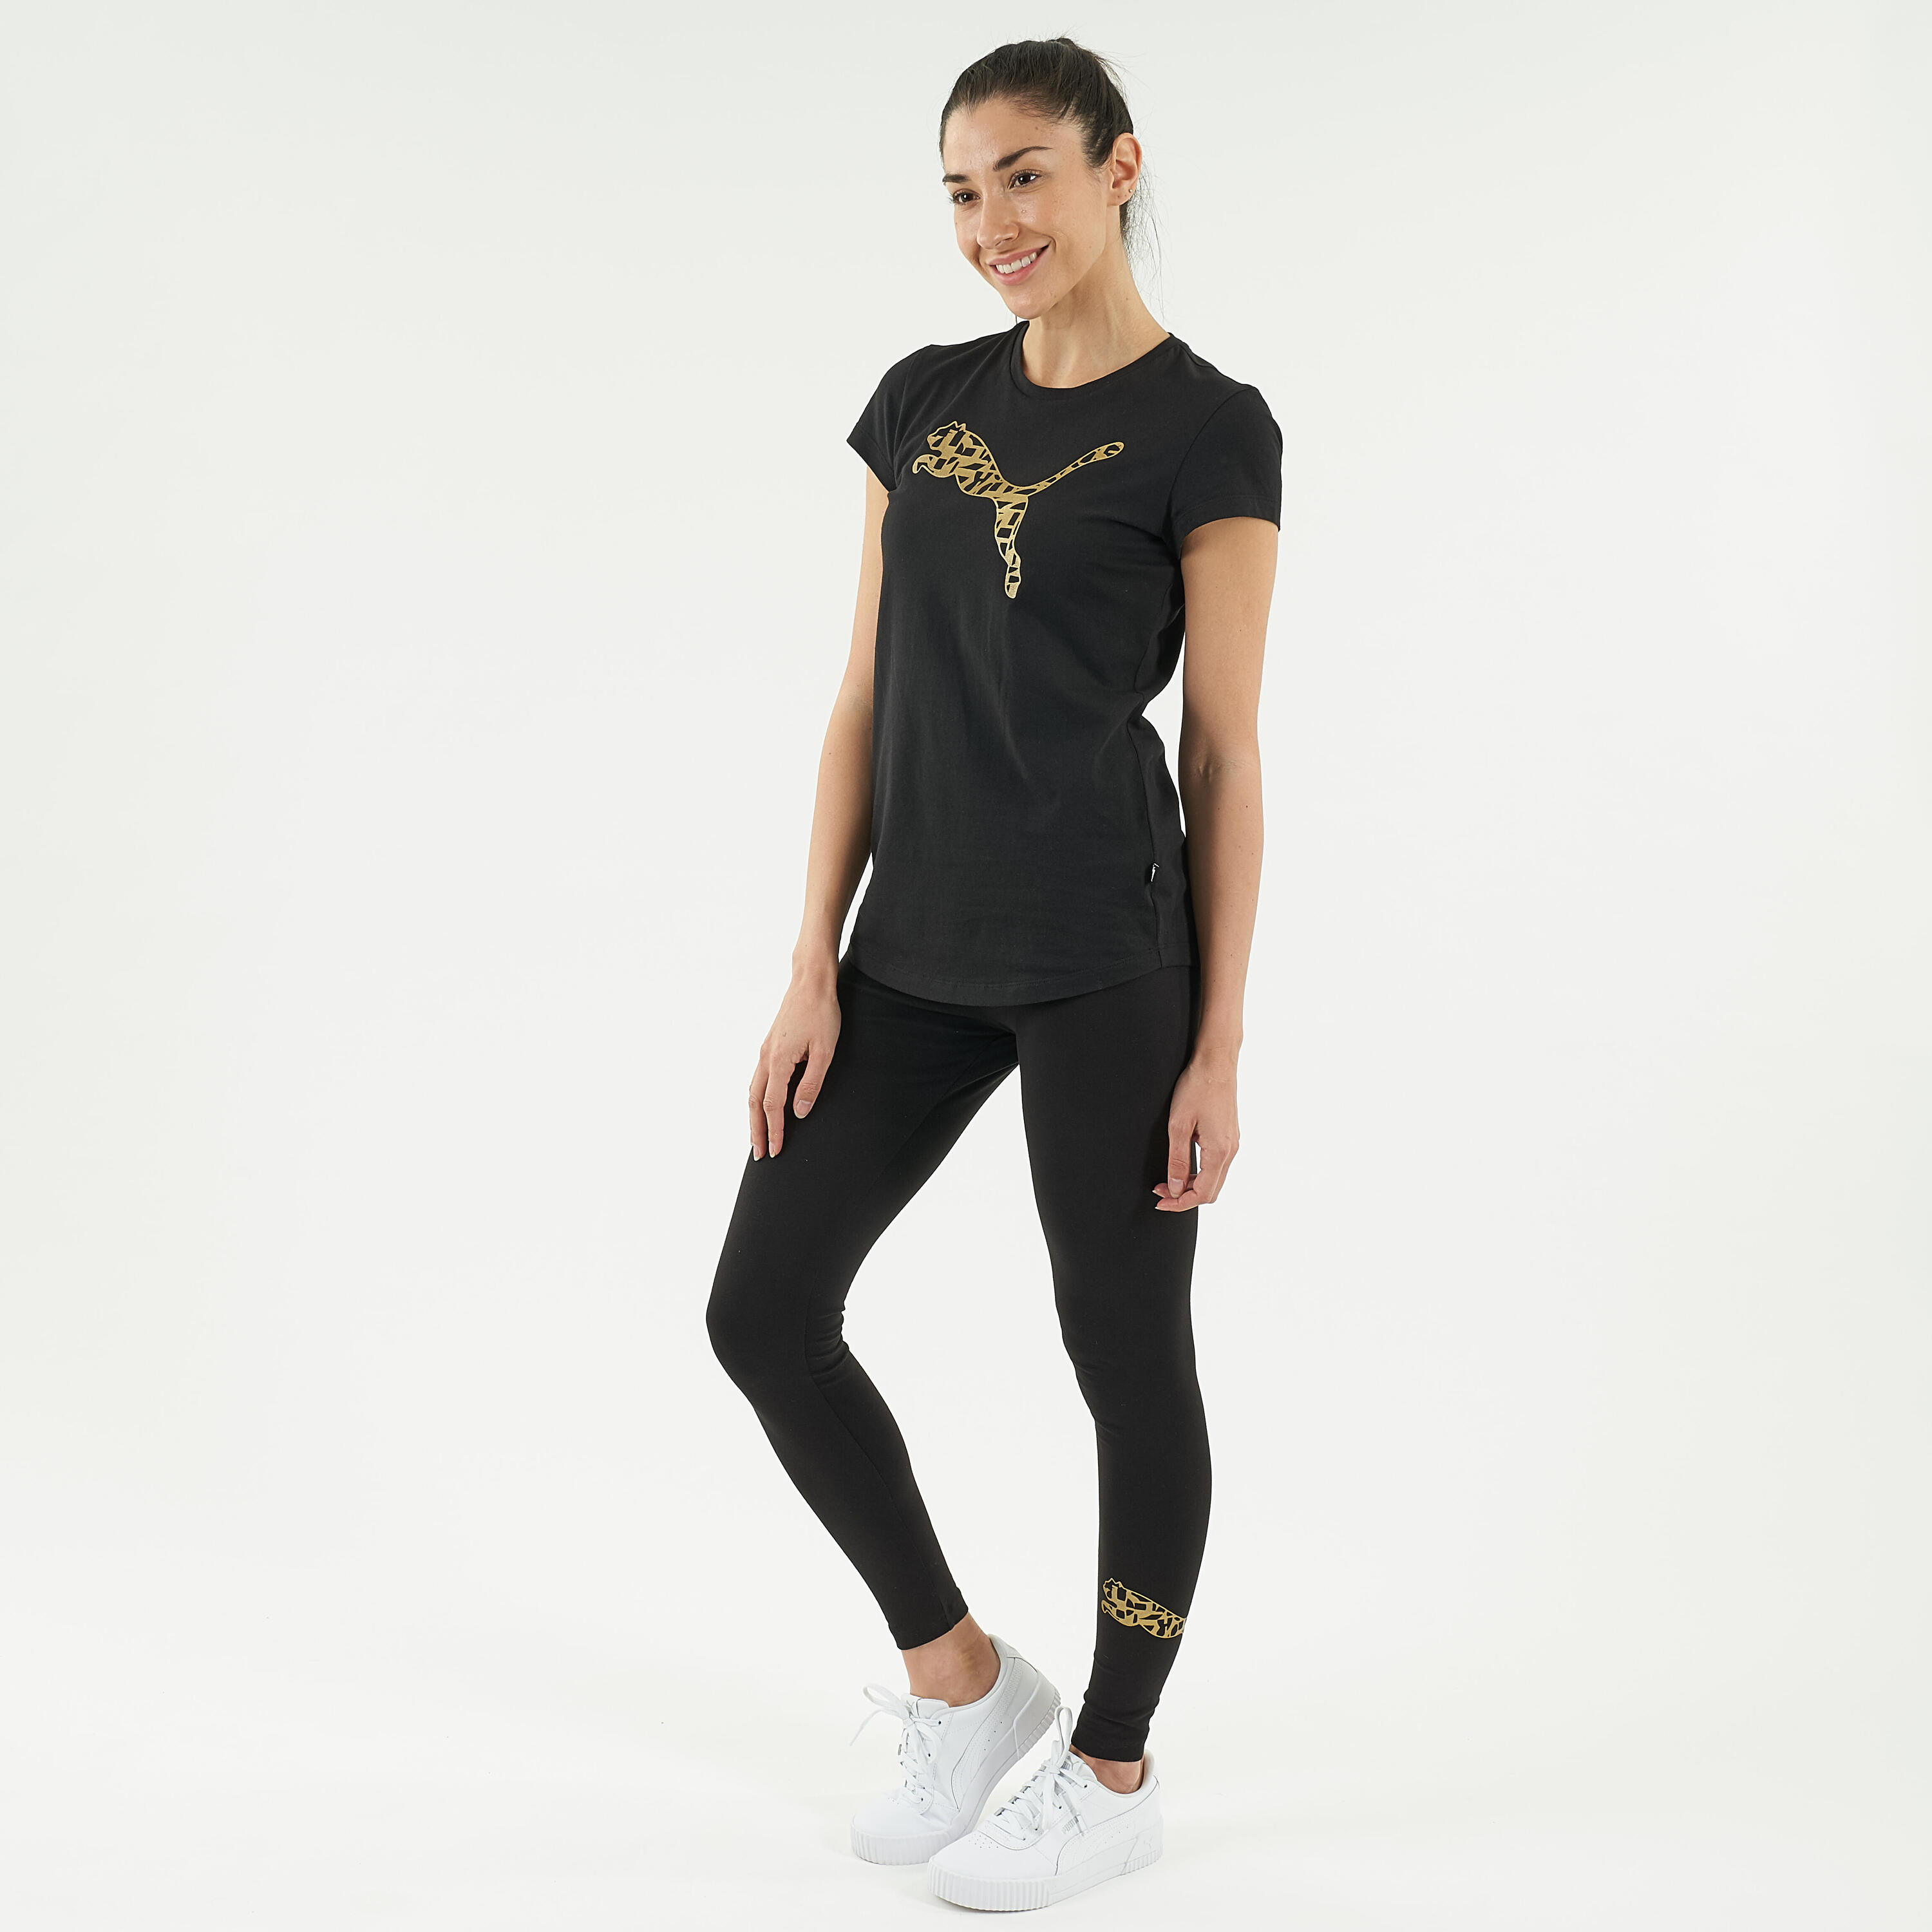 Cotton Fitness Leggings - Black/Gold Logo 1/7